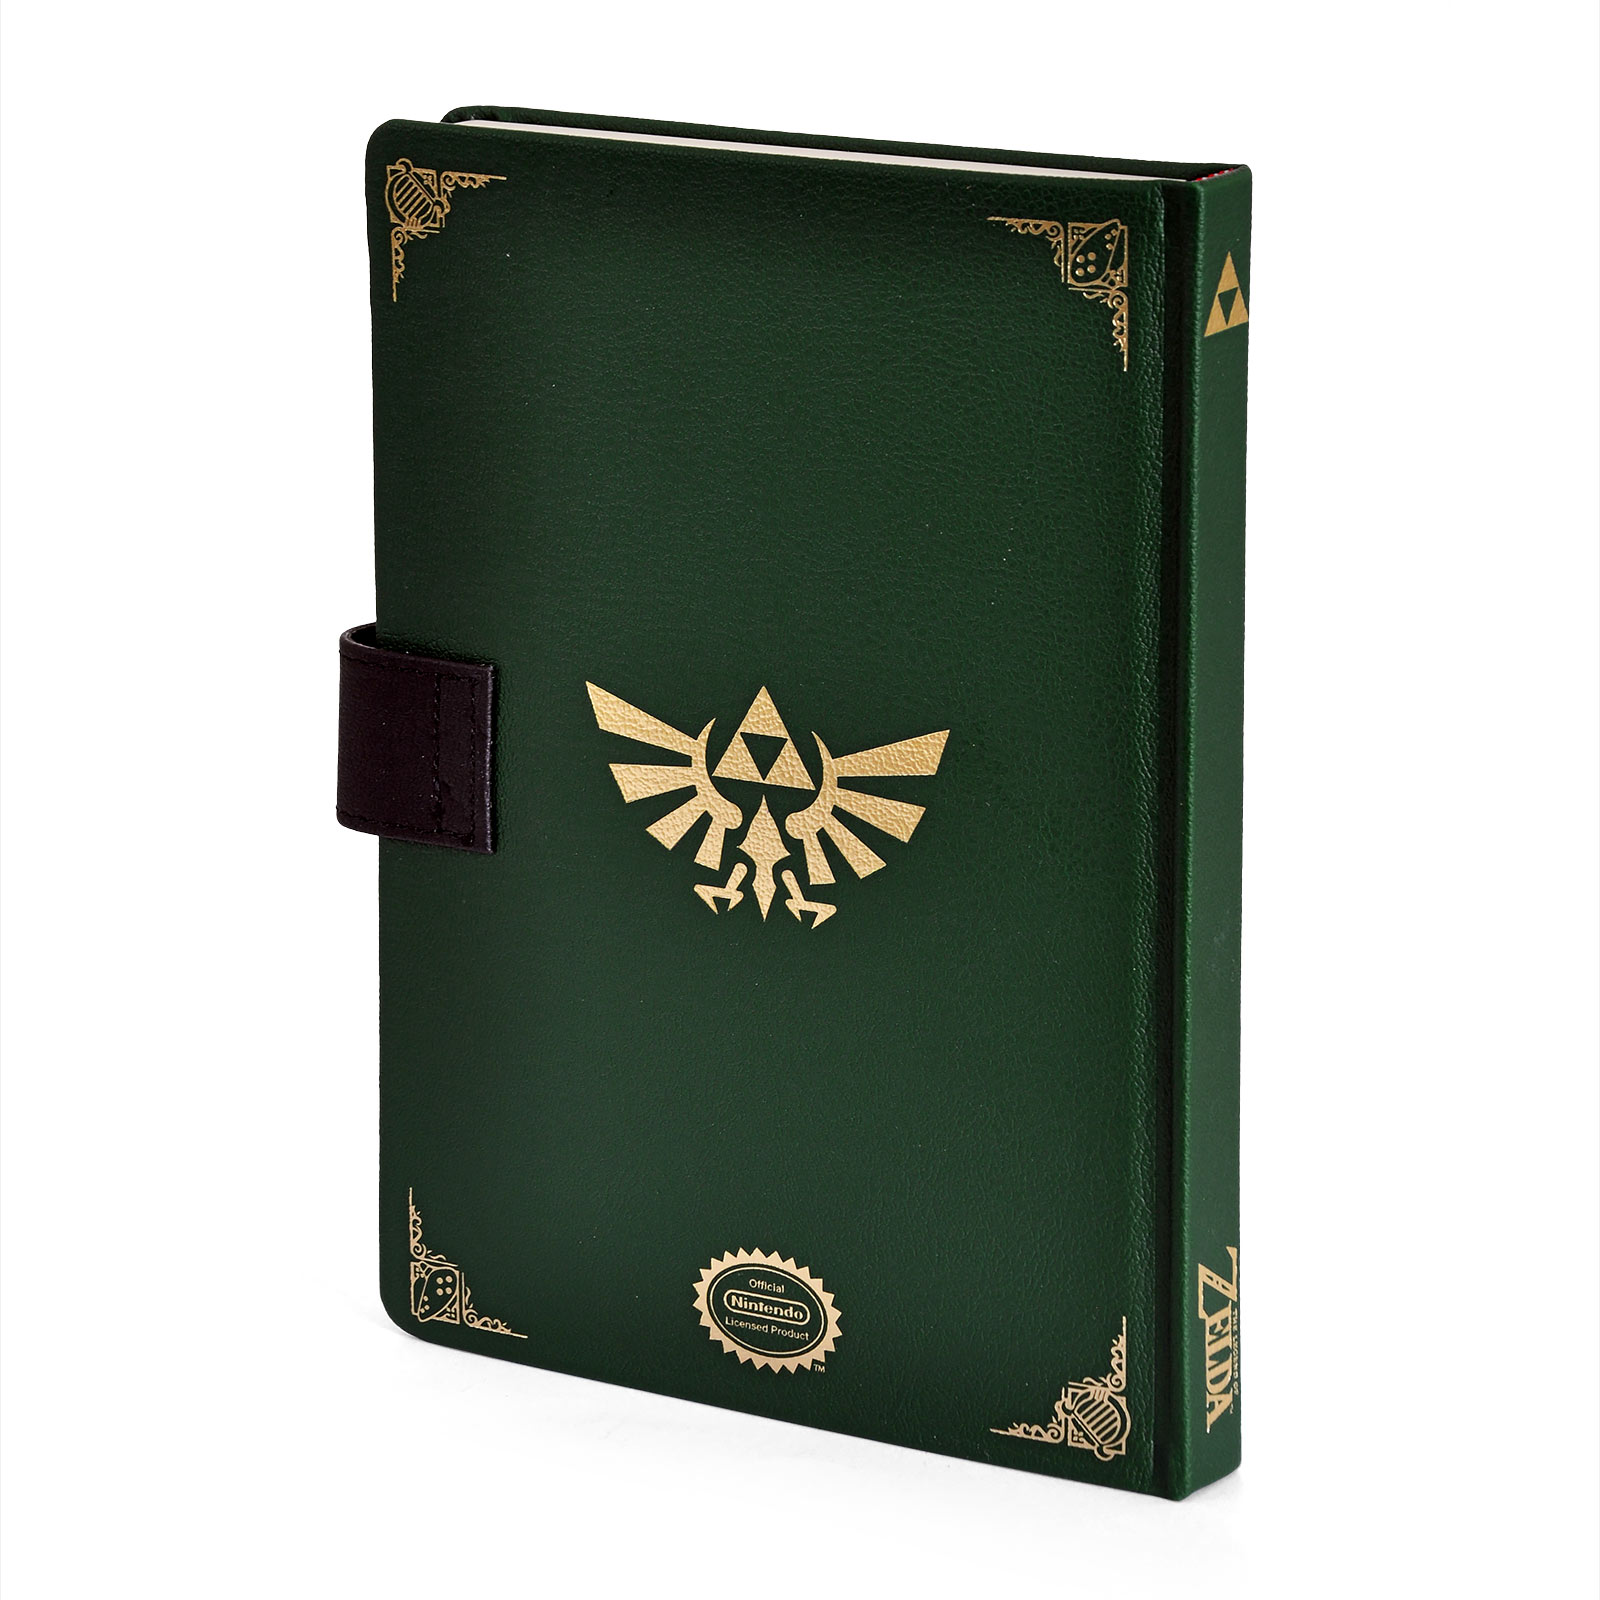 Zelda - Gate of Time Premium Notizbuch A5